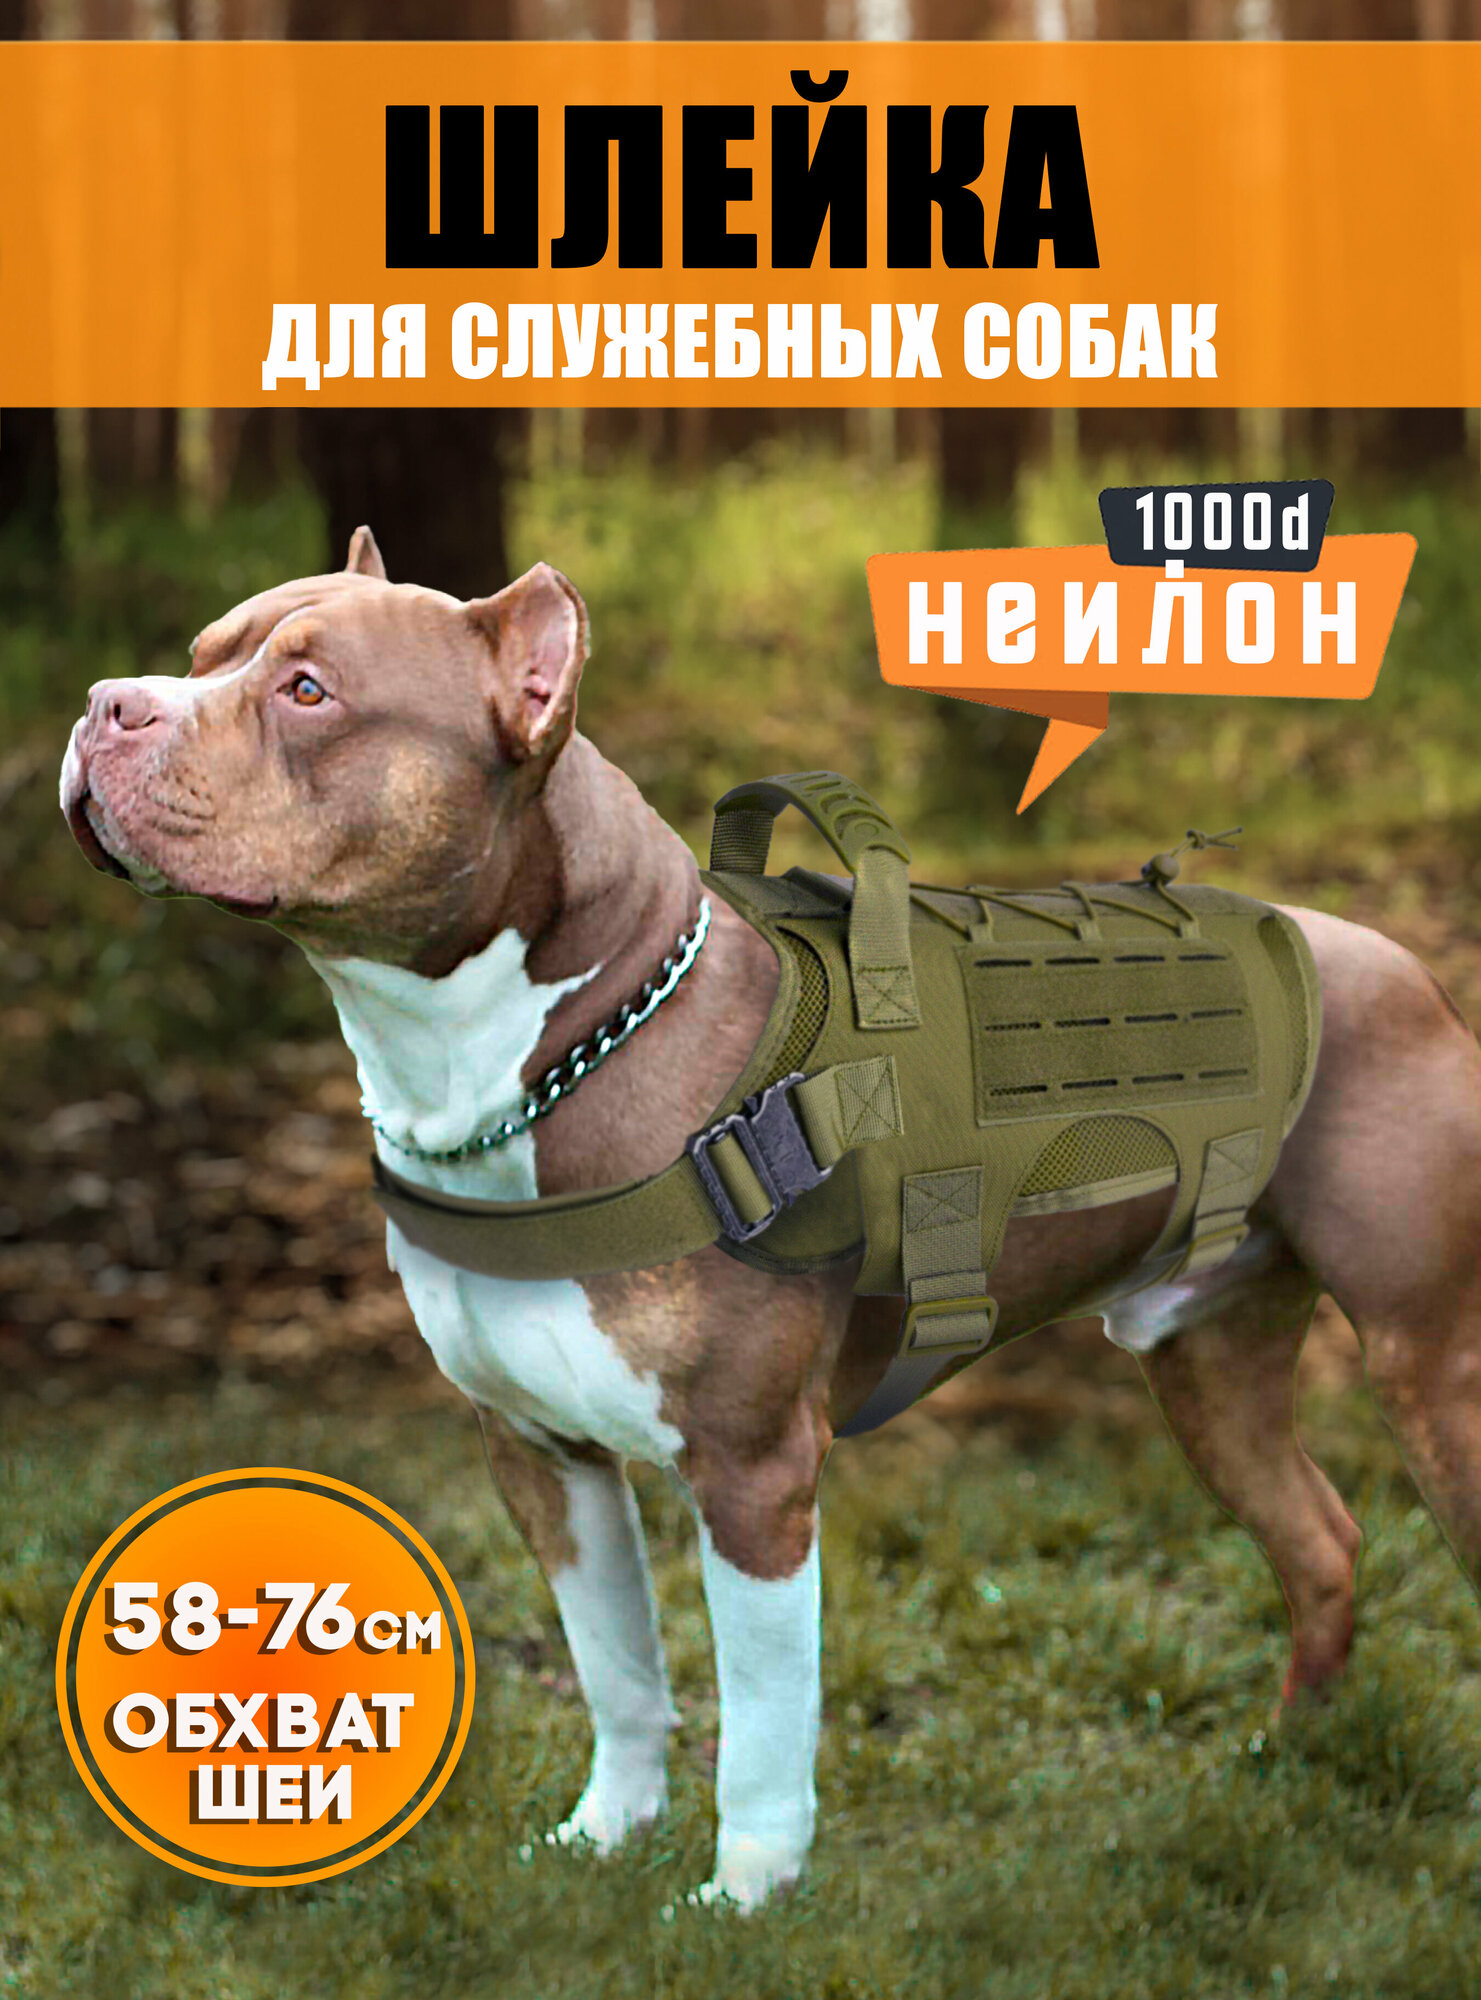 Тактическая шлейка для служебных собак, жилет, Цвет: Оливковый